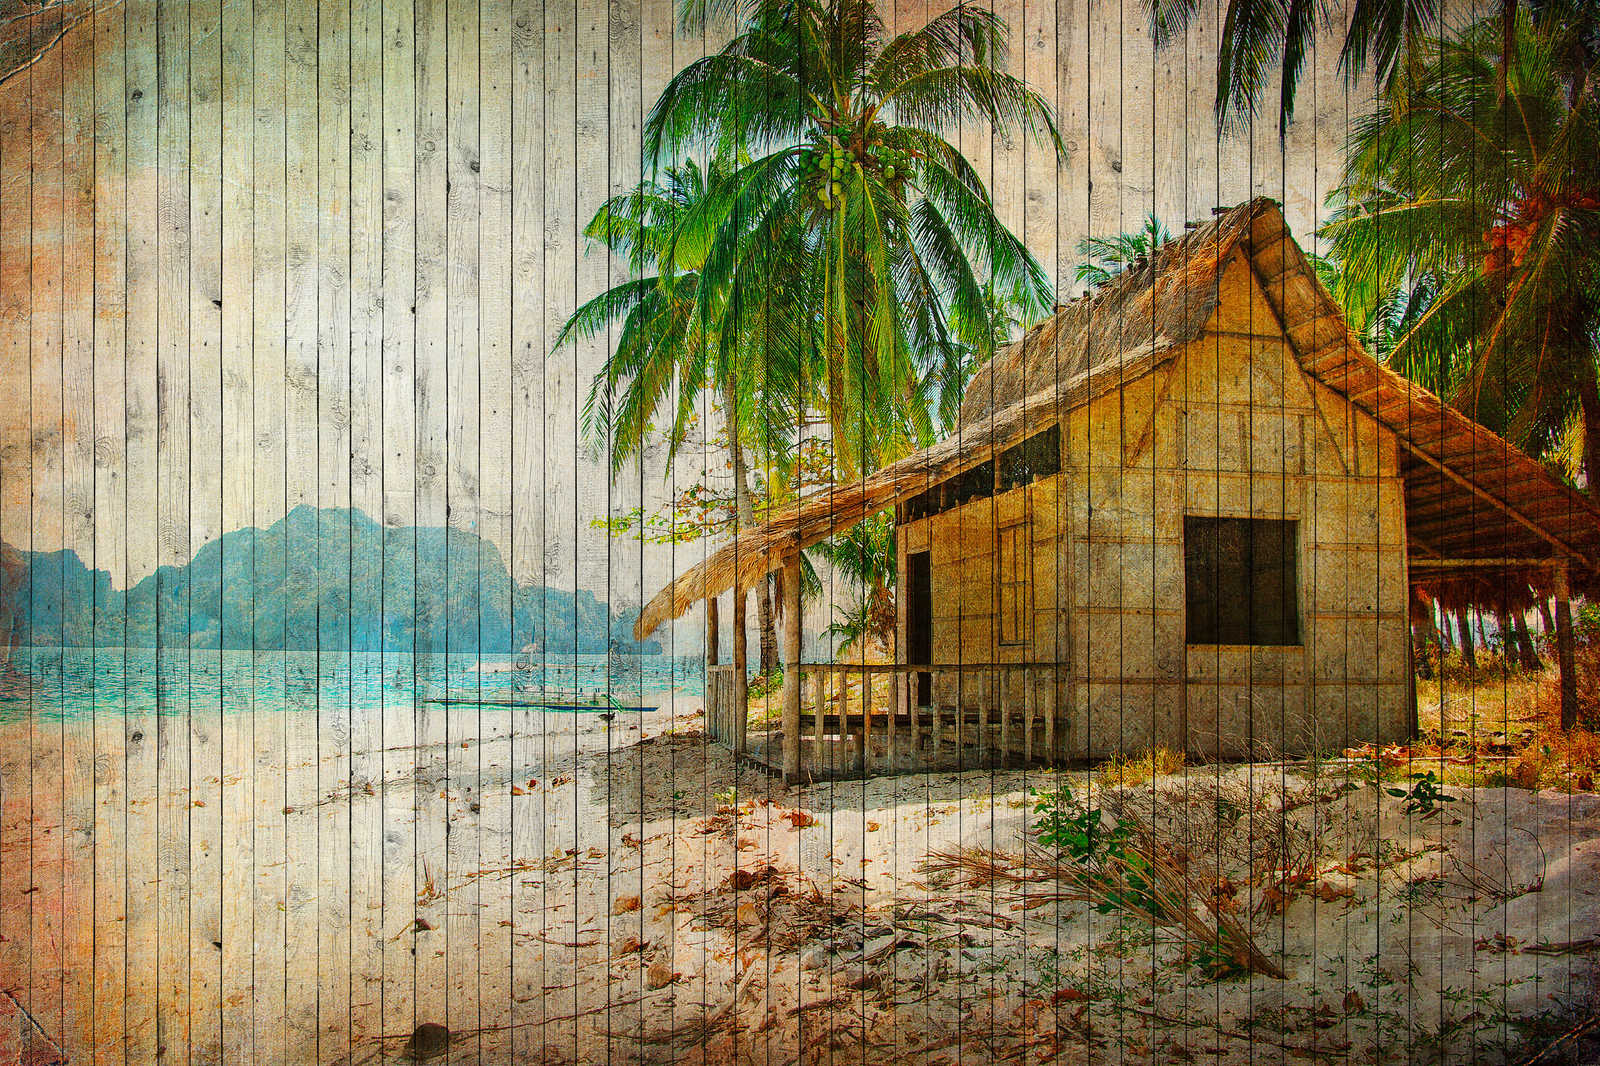             Tahiti 1 - Quadro su tela della spiaggia dei mari del sud con pannello ottico in legno - 0,90 m x 0,60 m
        